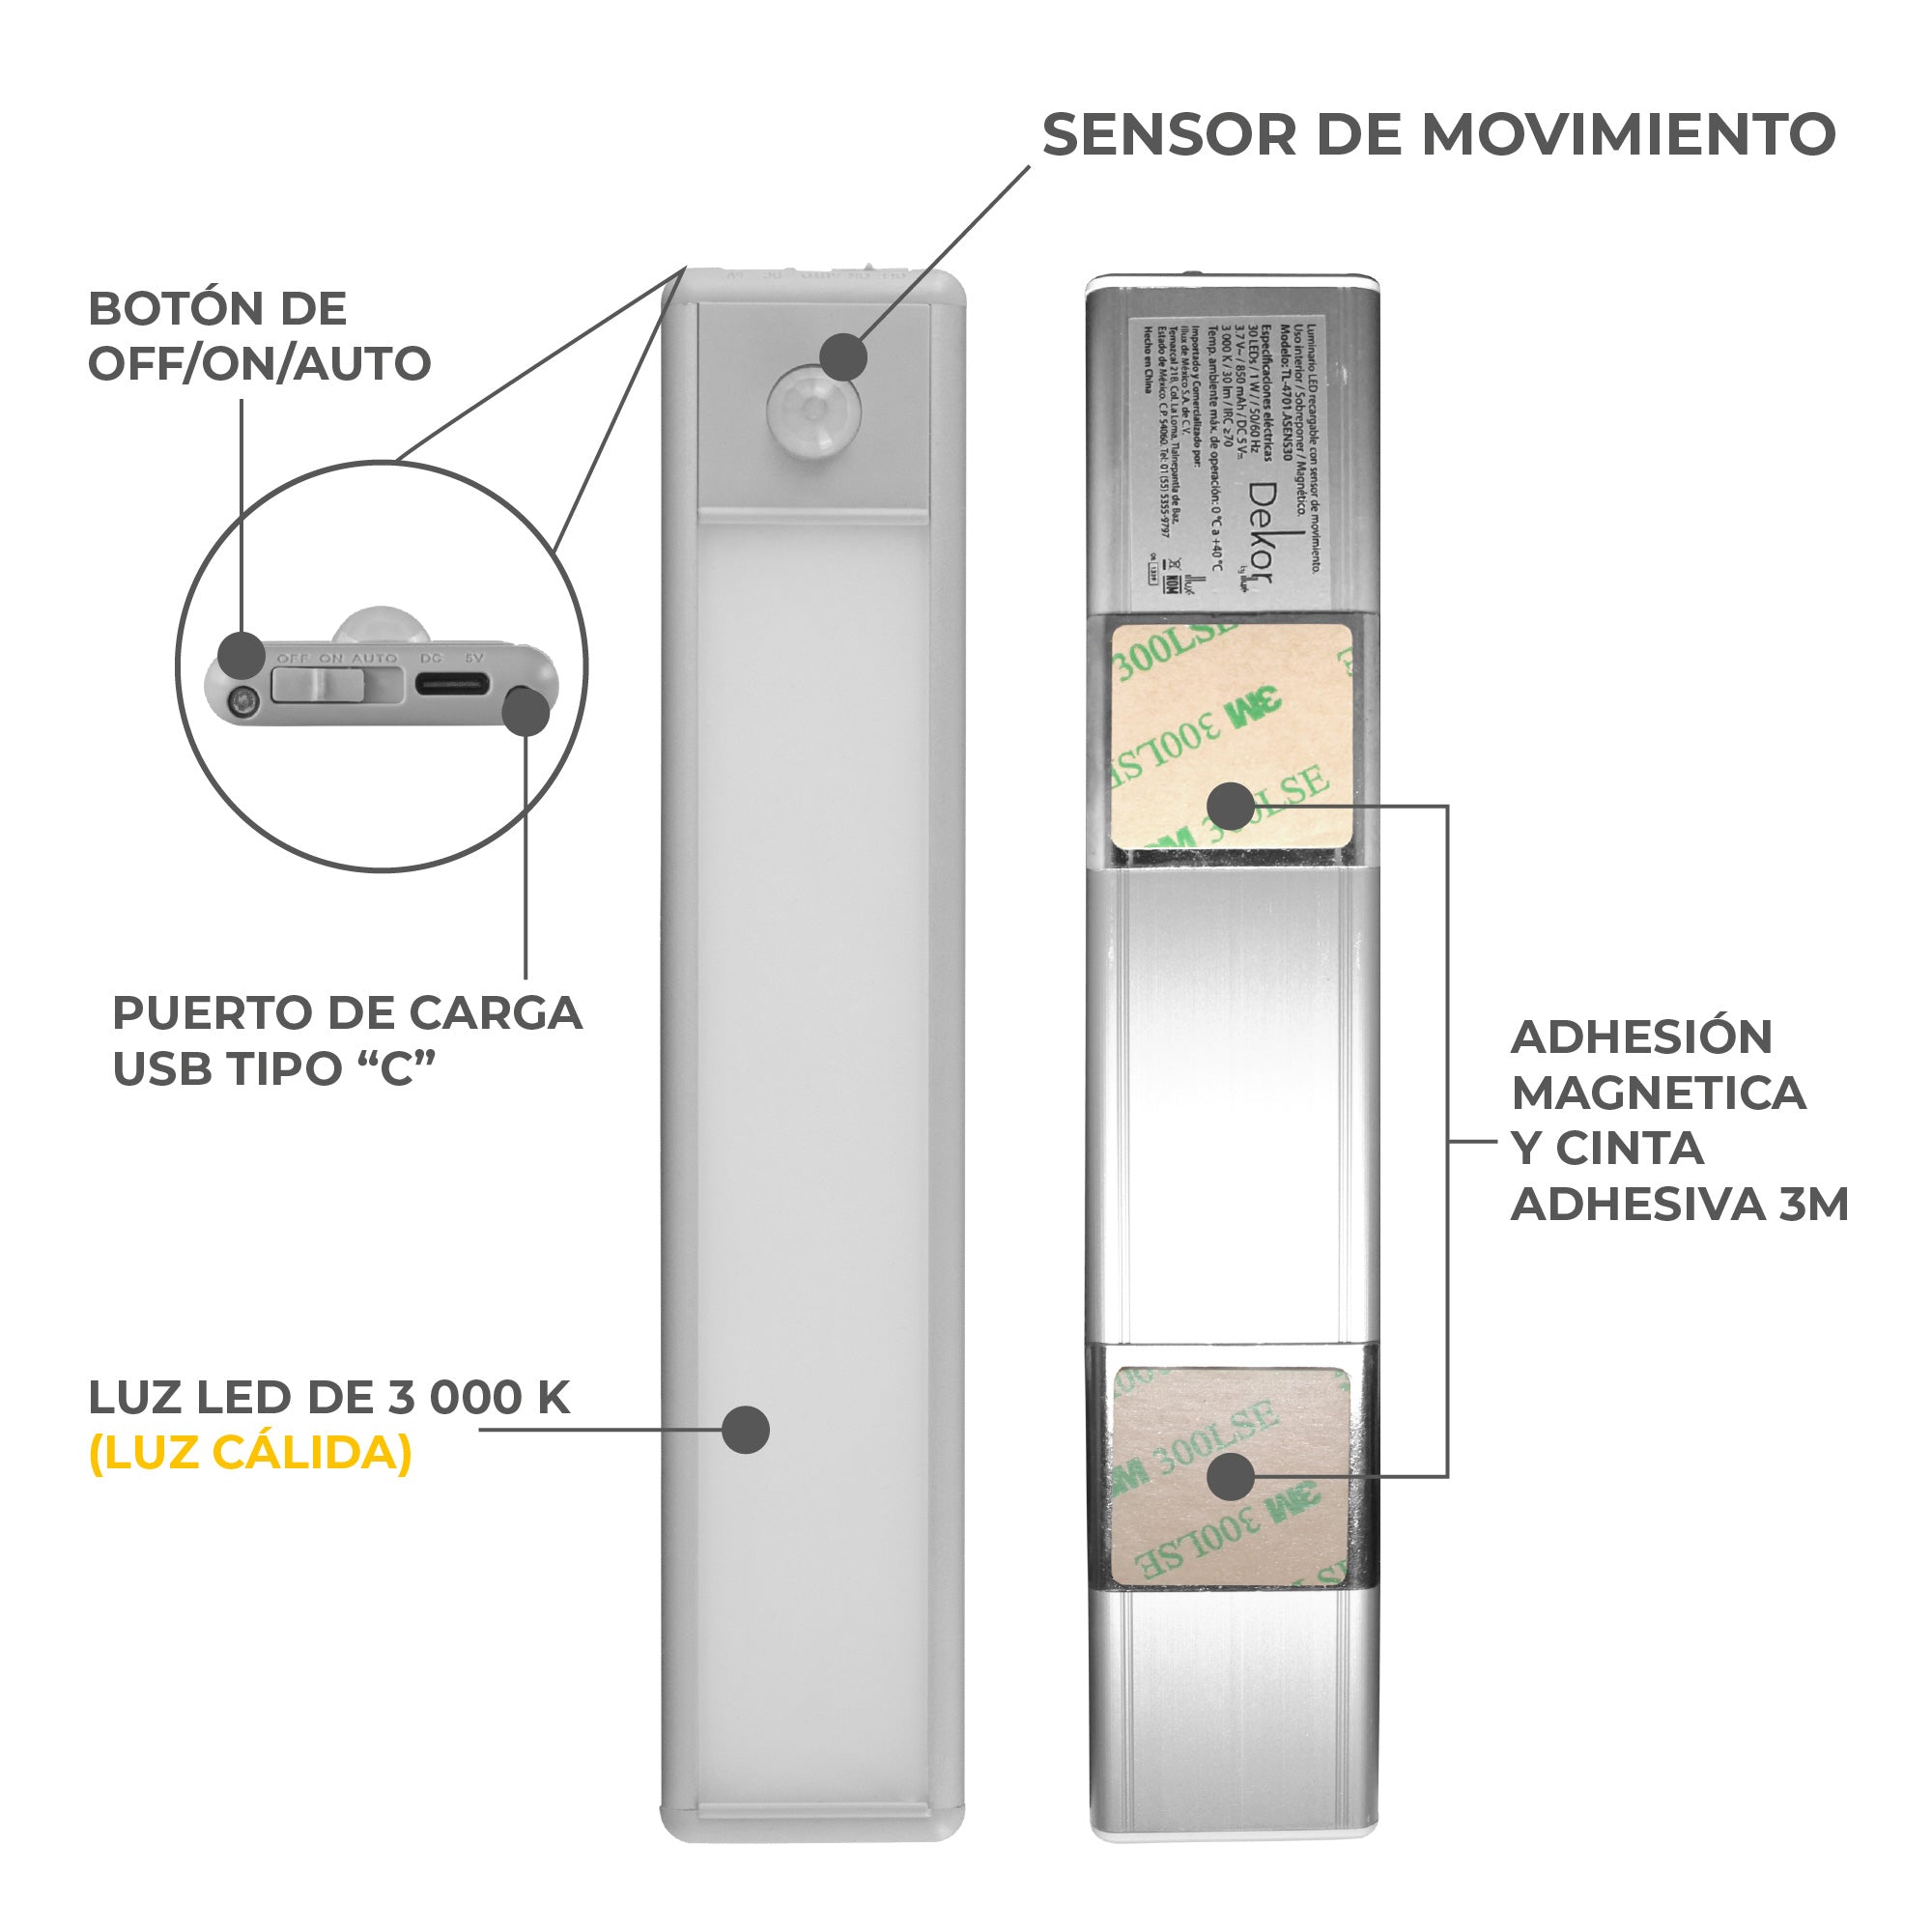 Luz de Closet LED con Sensor de movimiento, recargable USB,  para gabinete, alacena. TL-4701.ASENS30